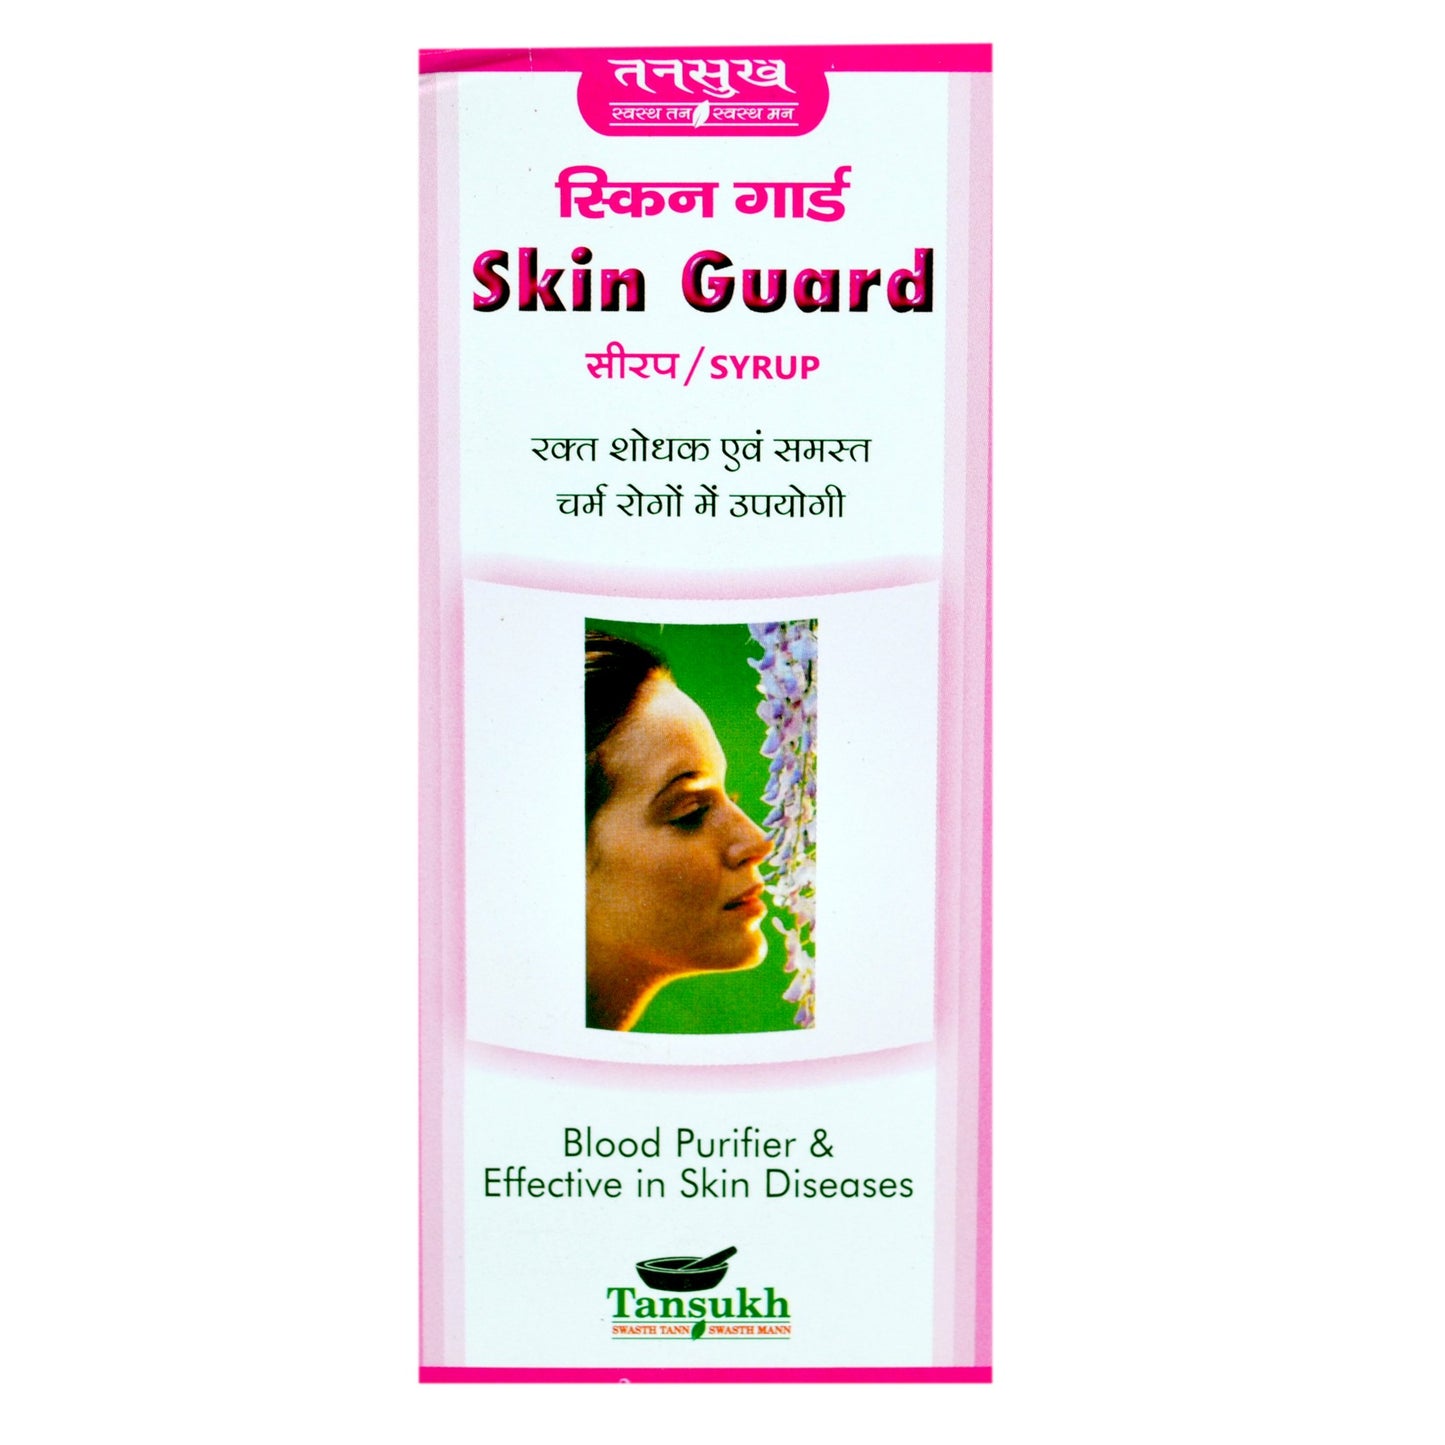 Tansukh Skin Guard Syurp, Ayurvedic Medicine for Skin Diseases, Blood Purifier, Leucoderma, white Patches on skin